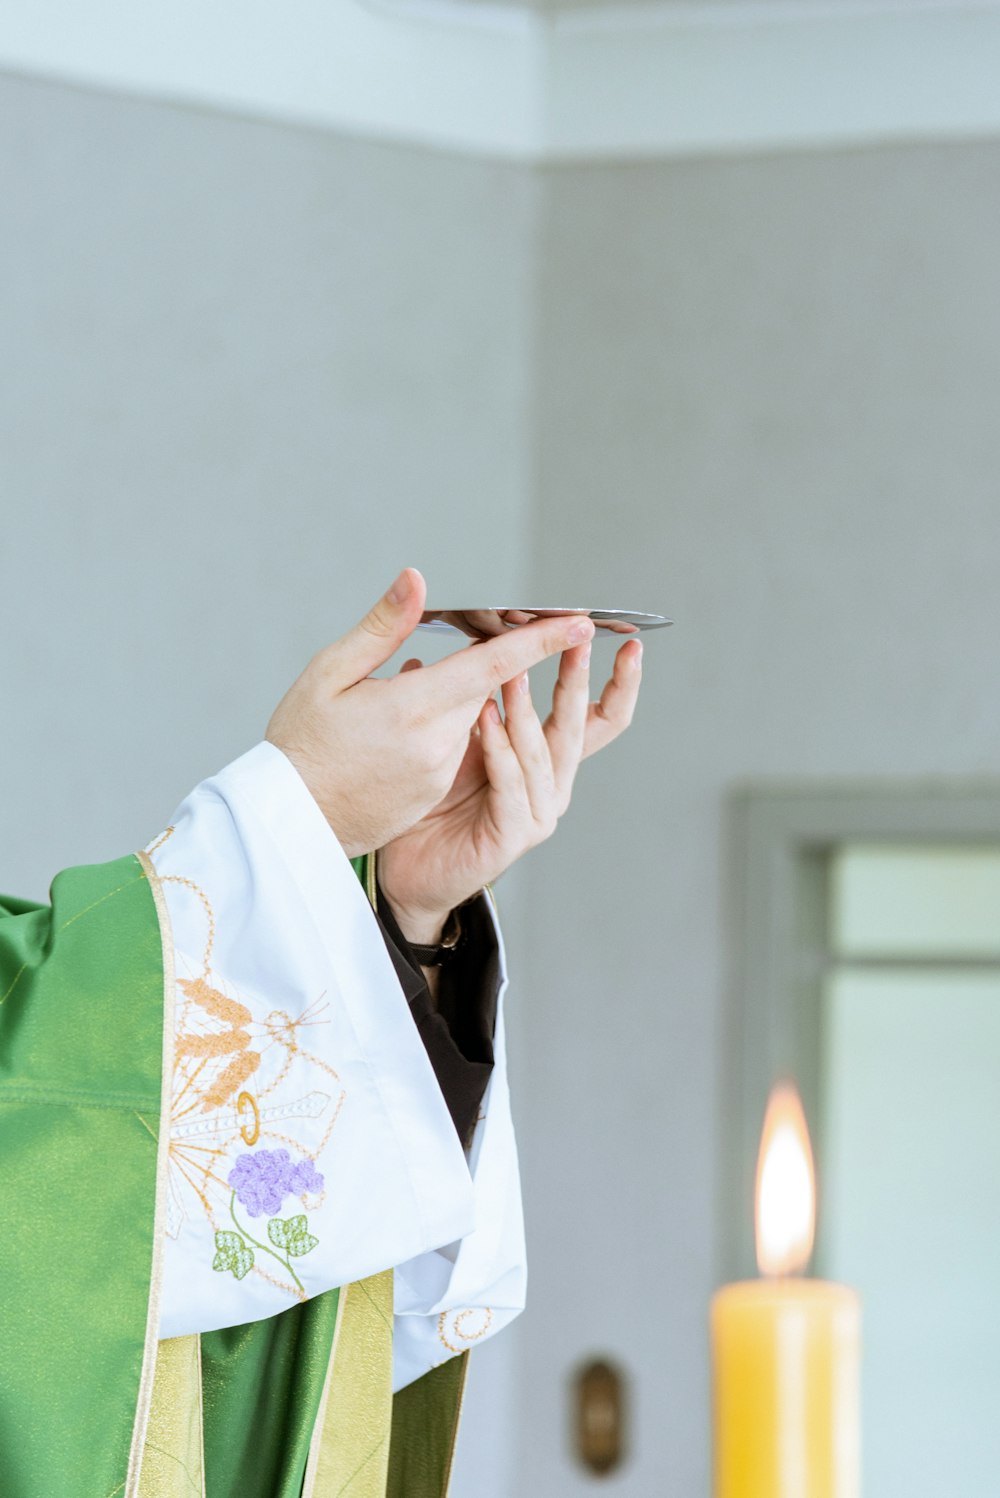 Una persona con una túnica de sacerdote sosteniendo un teléfono celular